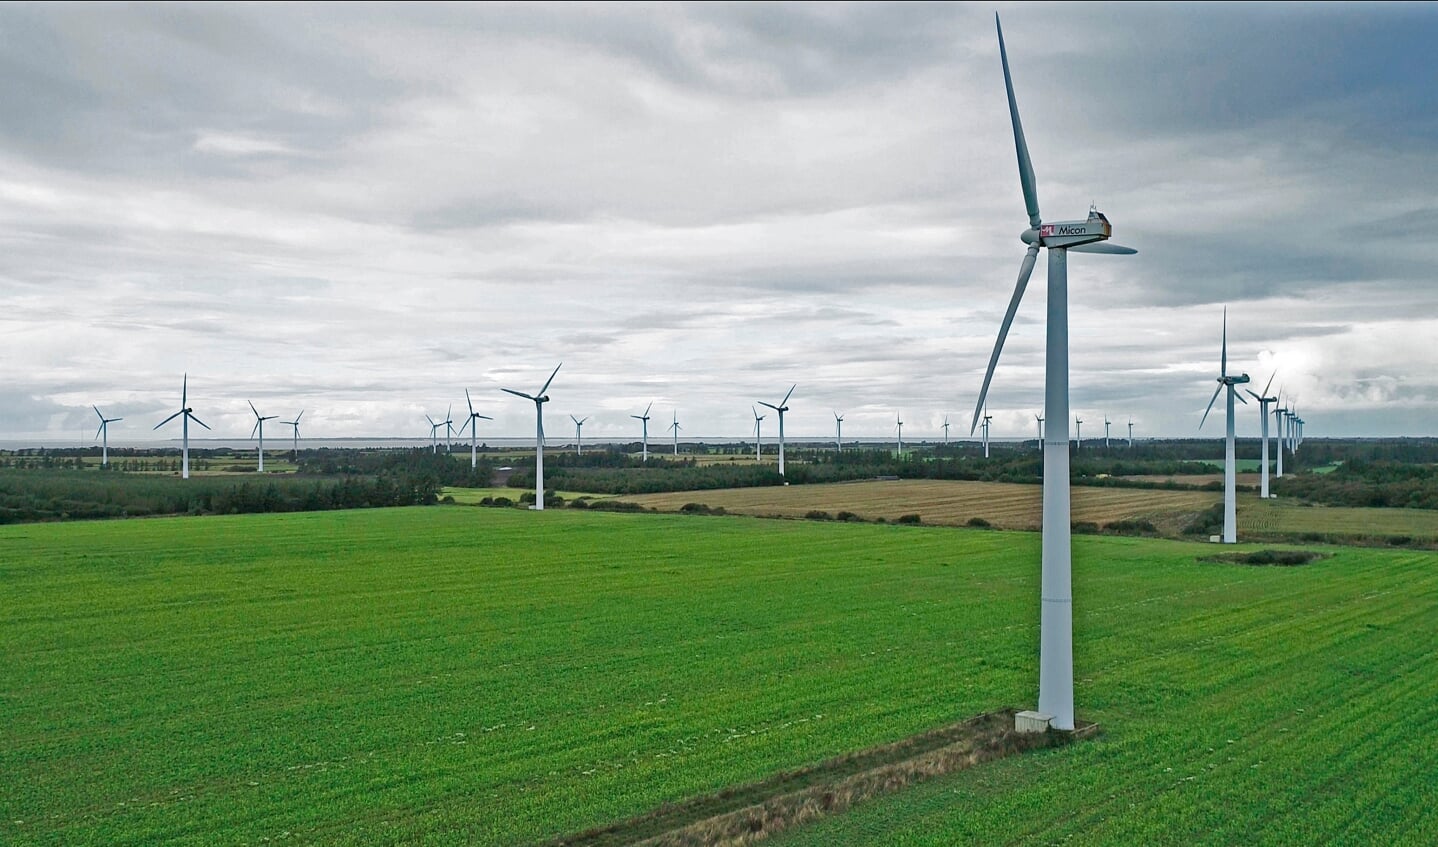 Vindmølleprojekt på Rejsby Hede syd for Ballum, hvor de nuværende 40 ældre møller skal erstattes med 15 store, er nu blevet udvidet til at fremstå som et hybridprojekt, hvor vindmøllerne kombineres med opstilling af 23 hektar solceller. Foto: 